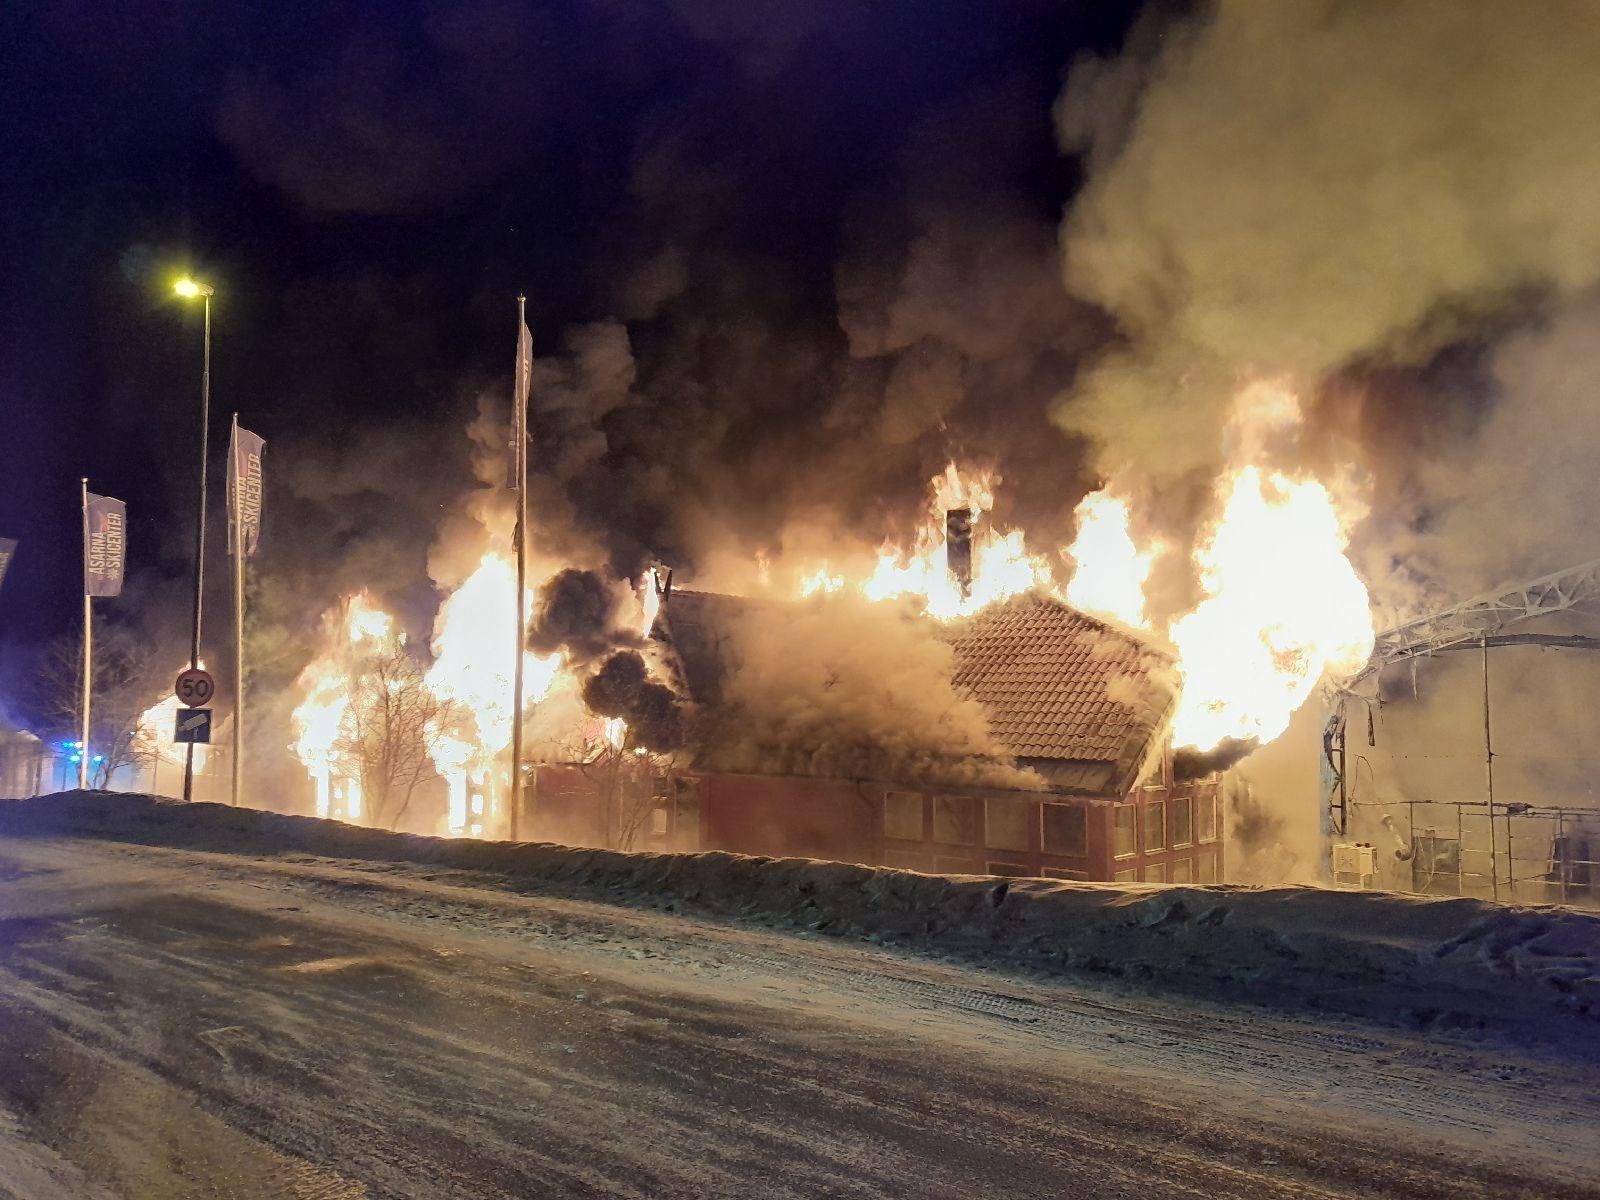 Huvudbyggnaden på Åsarna Skicenter gick inte att rädda, istället fick räddningstjänsten arbeta med att förhindra spridning.